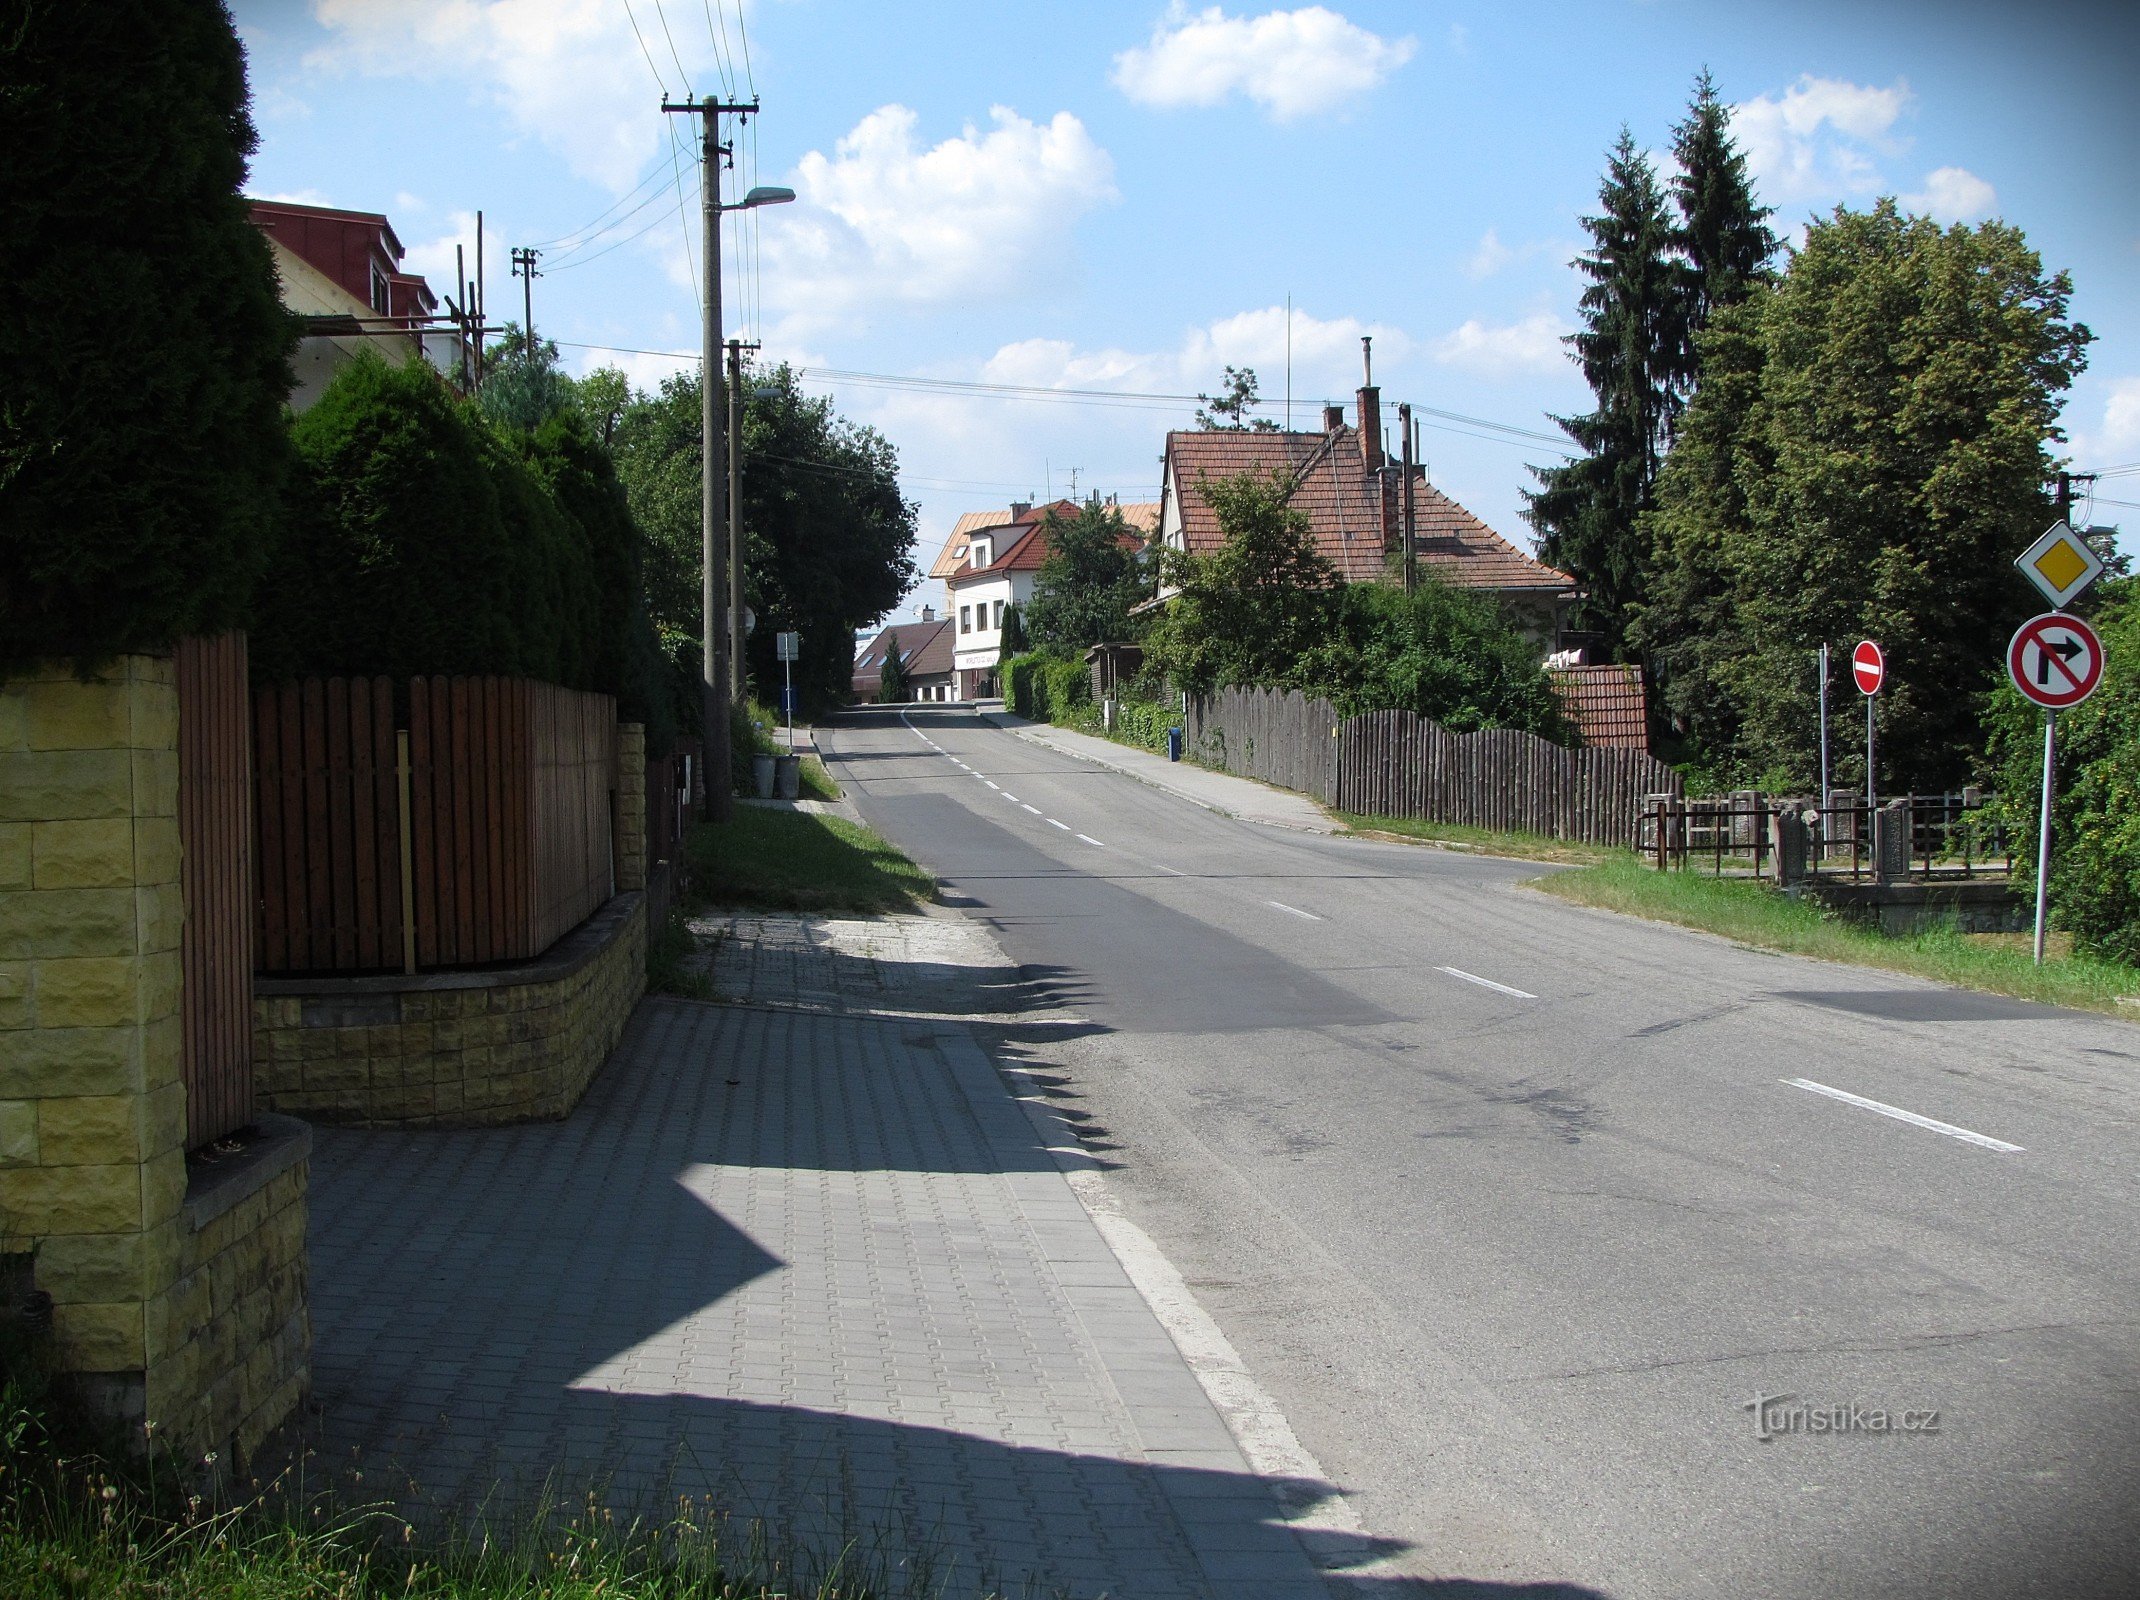 strada Hradská